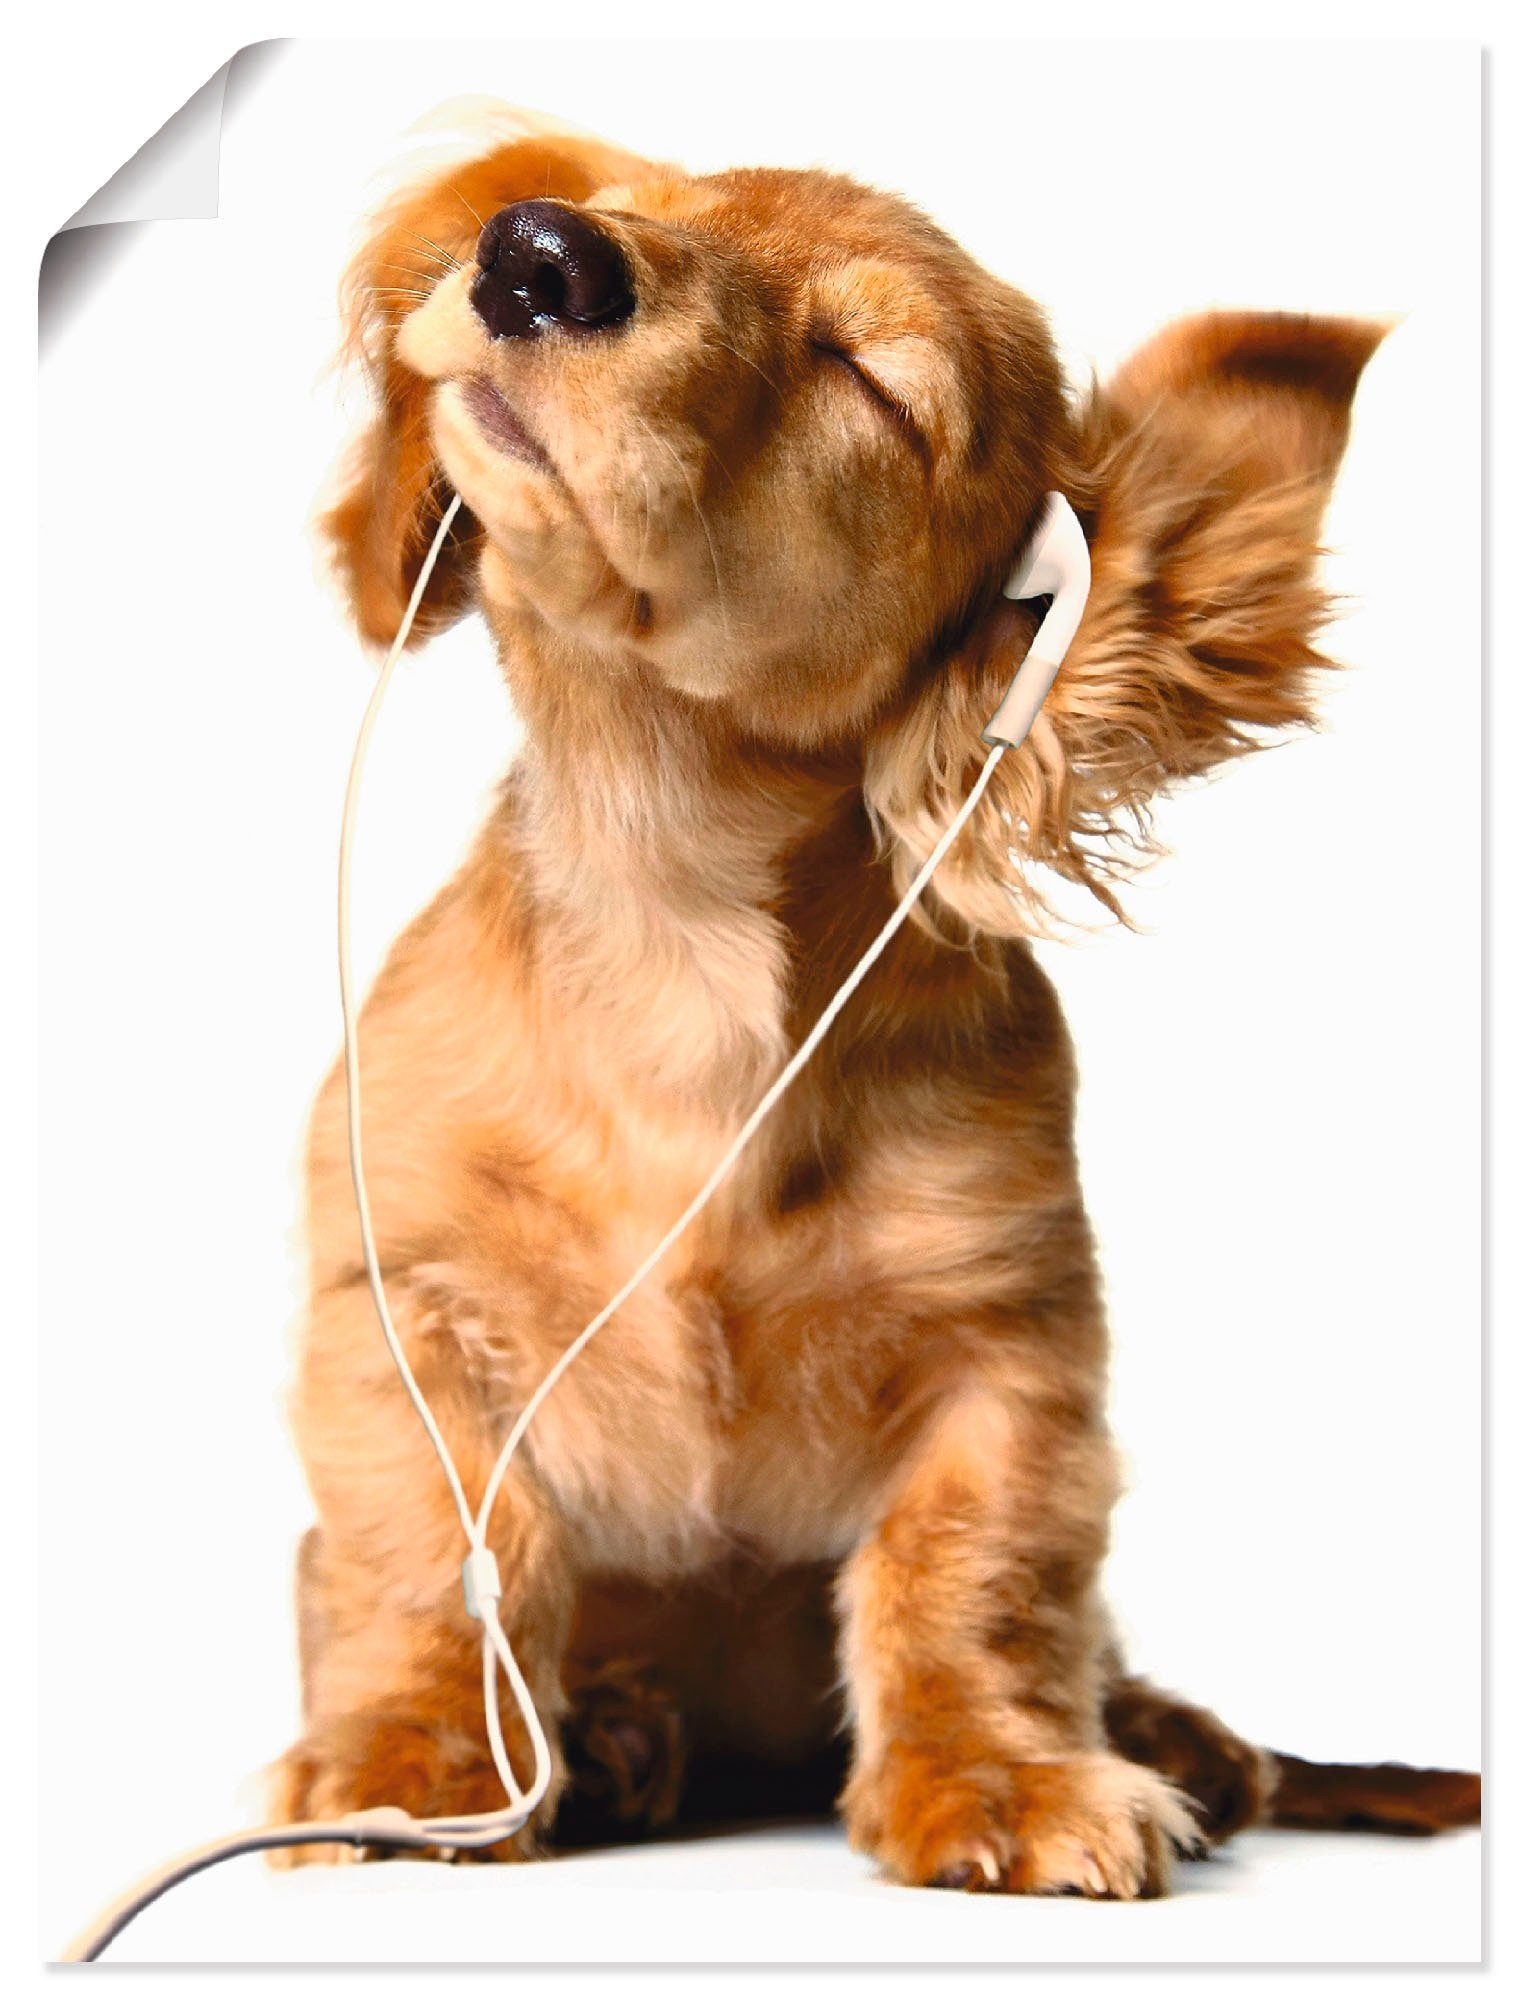 Artland Artprint Jonge hond die naar muziek door hoofdtelefoon luistert in vele afmetingen & productsoorten -artprint op linnen, poster, muursticker / wandfolie ook geschikt voor d